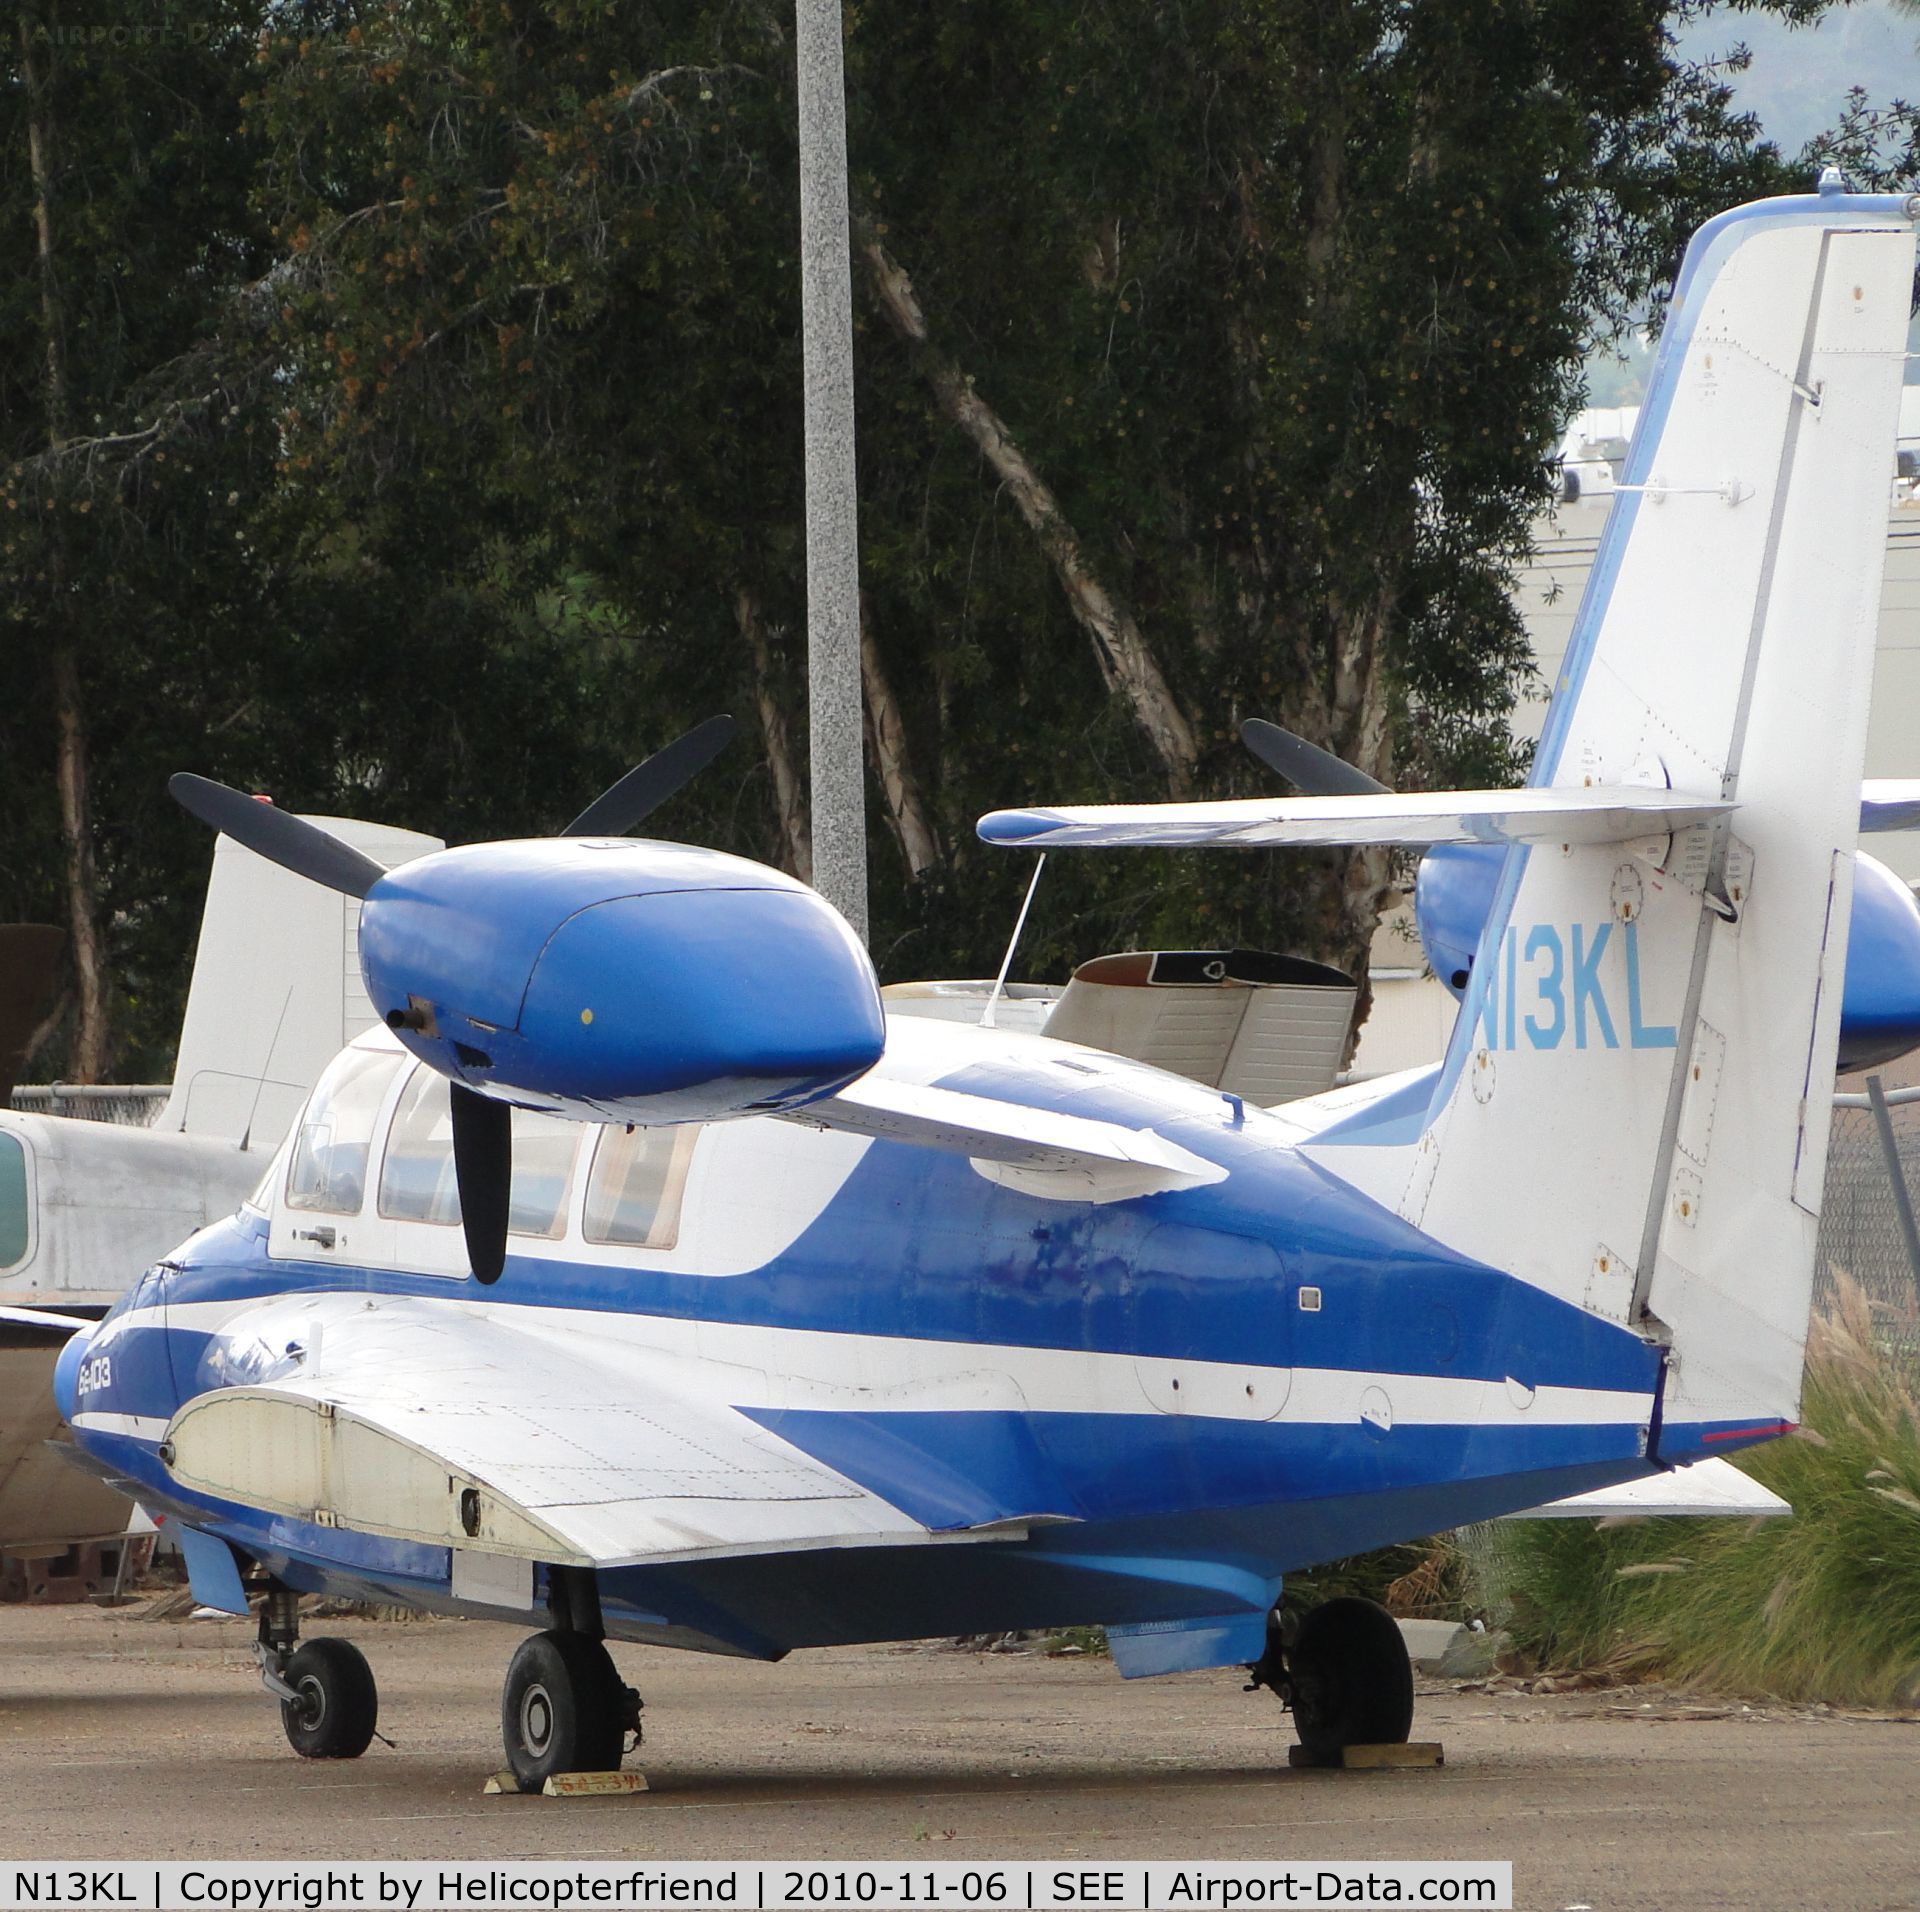 N13KL, 2003 Beriev Be-103 C/N 3301, Wings are missing